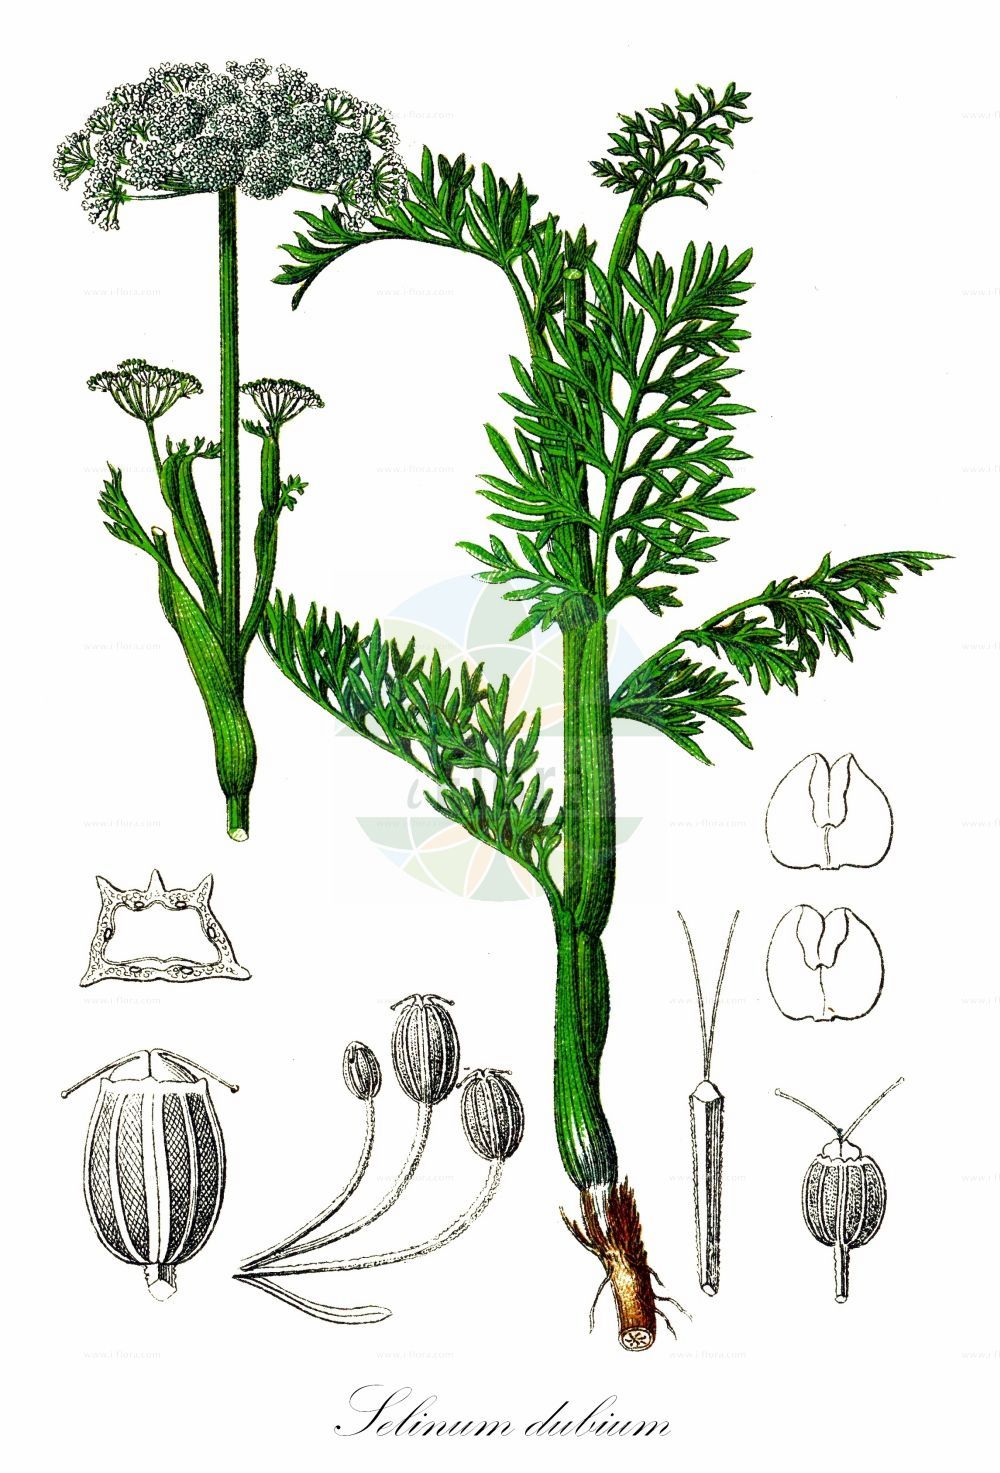 Historische Abbildung von Selinum dubium (Sumpf-Brenndolde - Doubtful Chickweed). Das Bild zeigt Blatt, Bluete, Frucht und Same. ---- Historical Drawing of Selinum dubium (Sumpf-Brenndolde - Doubtful Chickweed). The image is showing leaf, flower, fruit and seed.(Selinum dubium,Sumpf-Brenndolde,Doubtful Chickweed,Cnidium dubium,Cnidium venosum,Kadenia dubia,Selinum dubium,Selinum venosum,Seseli dubium,Seseli venosum,Sumpf-Brenndolde,Doubtful Chickweed,Selinum,Silge,Apiaceae,Doldengewächse,Carrot family,Blatt,Bluete,Frucht,Same,leaf,flower,fruit,seed,Sturm (1796f))